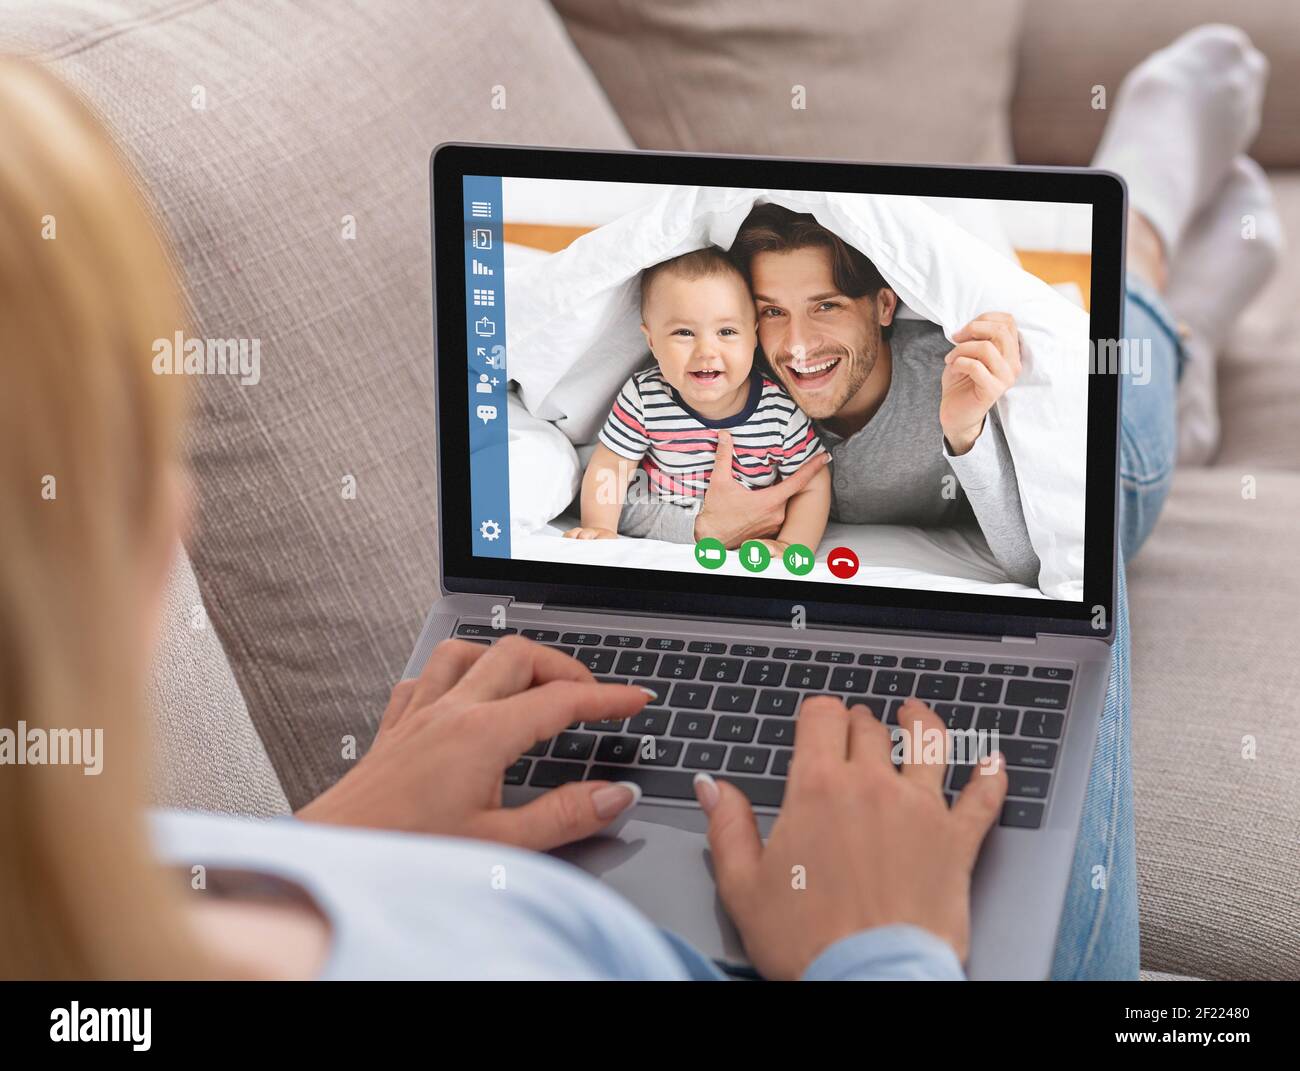 Glückliche Momente, Video-Meeting und Kommunikation mit Familie online, moderne App für Meetings Stockfoto